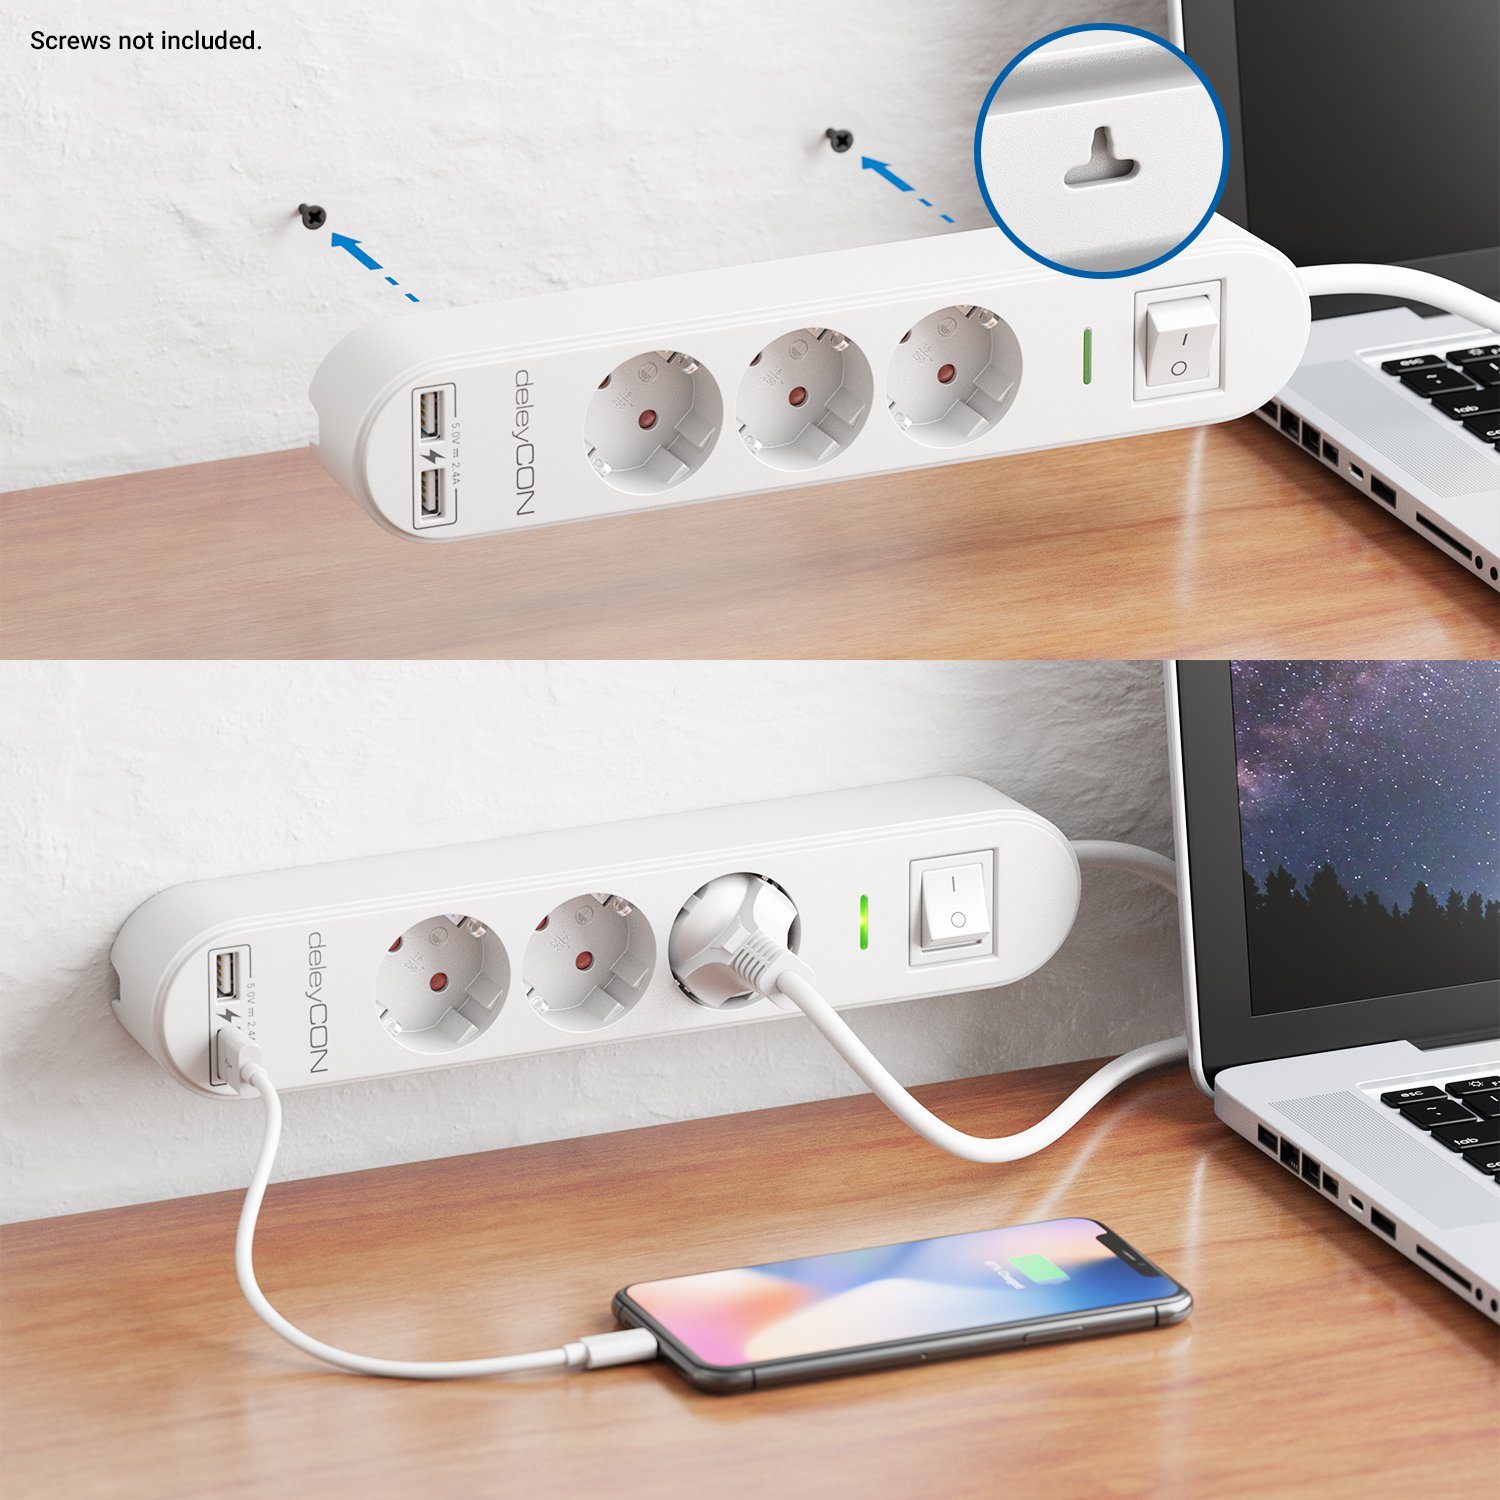 Schalter 3,0m USB 3 mit Weiß & deleyCON Fach deleyCON Steckdosenleiste EIN/AUS Steckdosenleiste